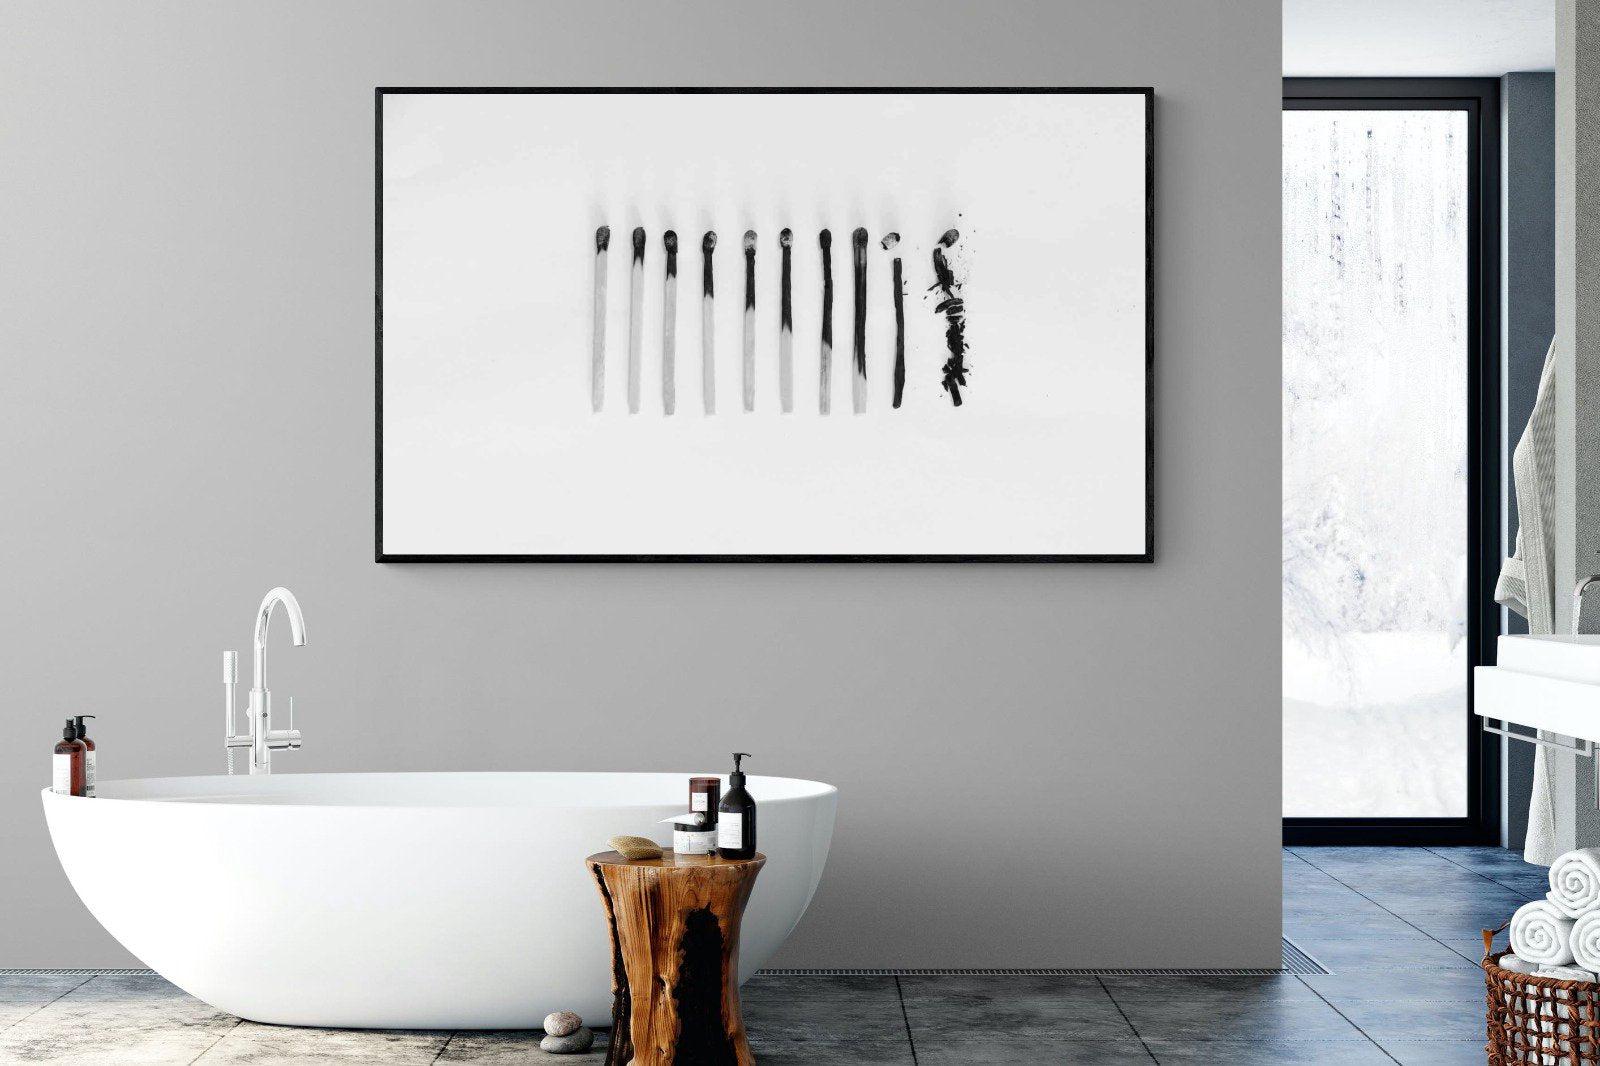 Matchsticks-Wall_Art-180 x 110cm-Mounted Canvas-Black-Pixalot